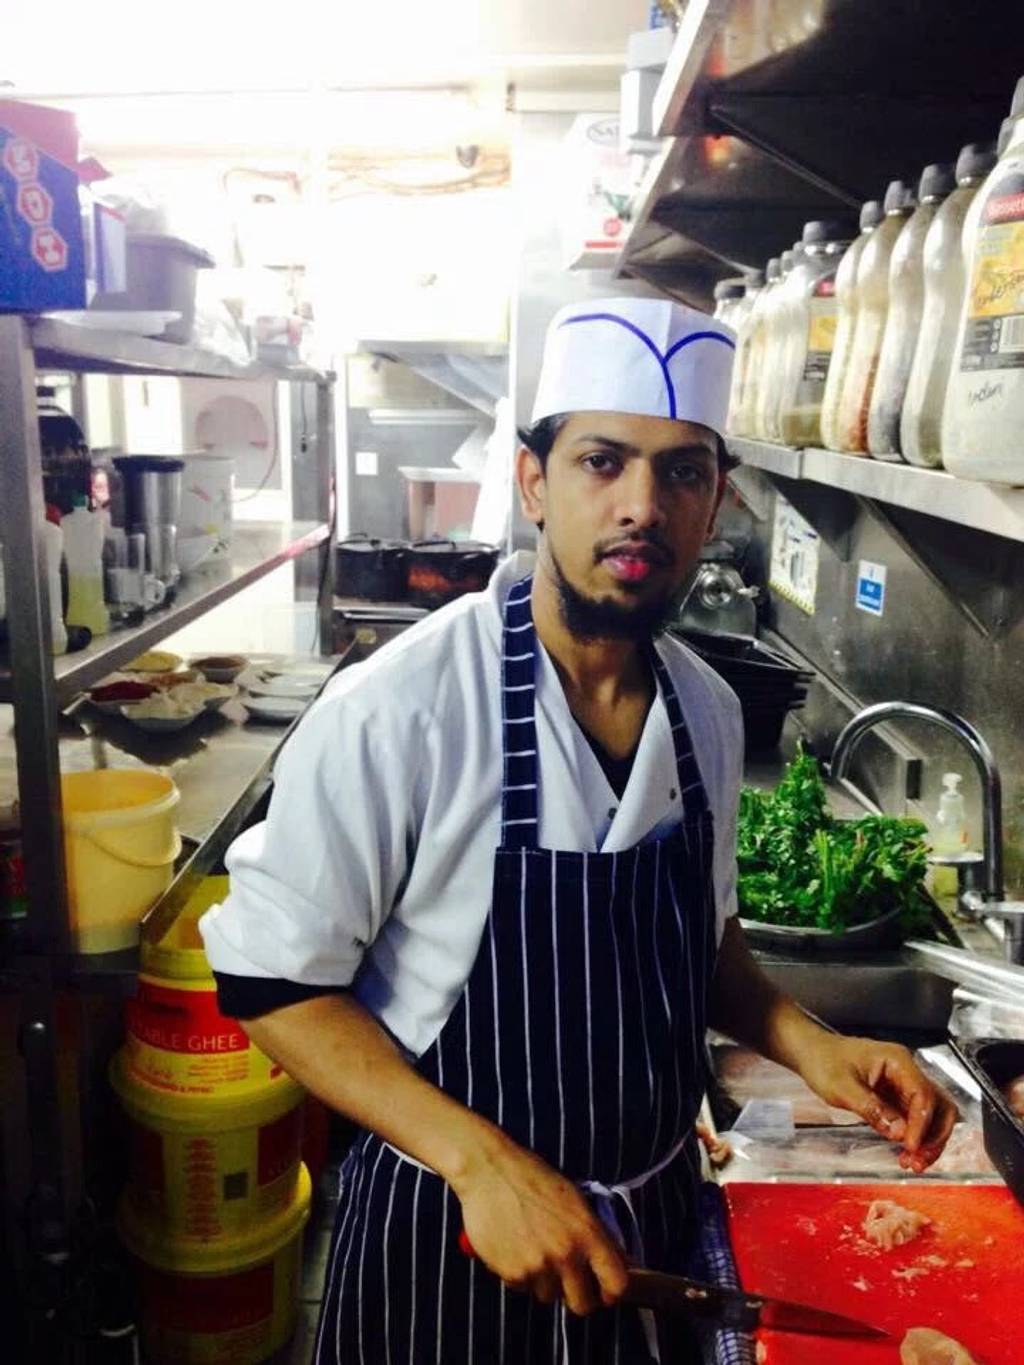 Indien Royal Indien Paris - Cook Street food Chef Shopkeeper Cooking